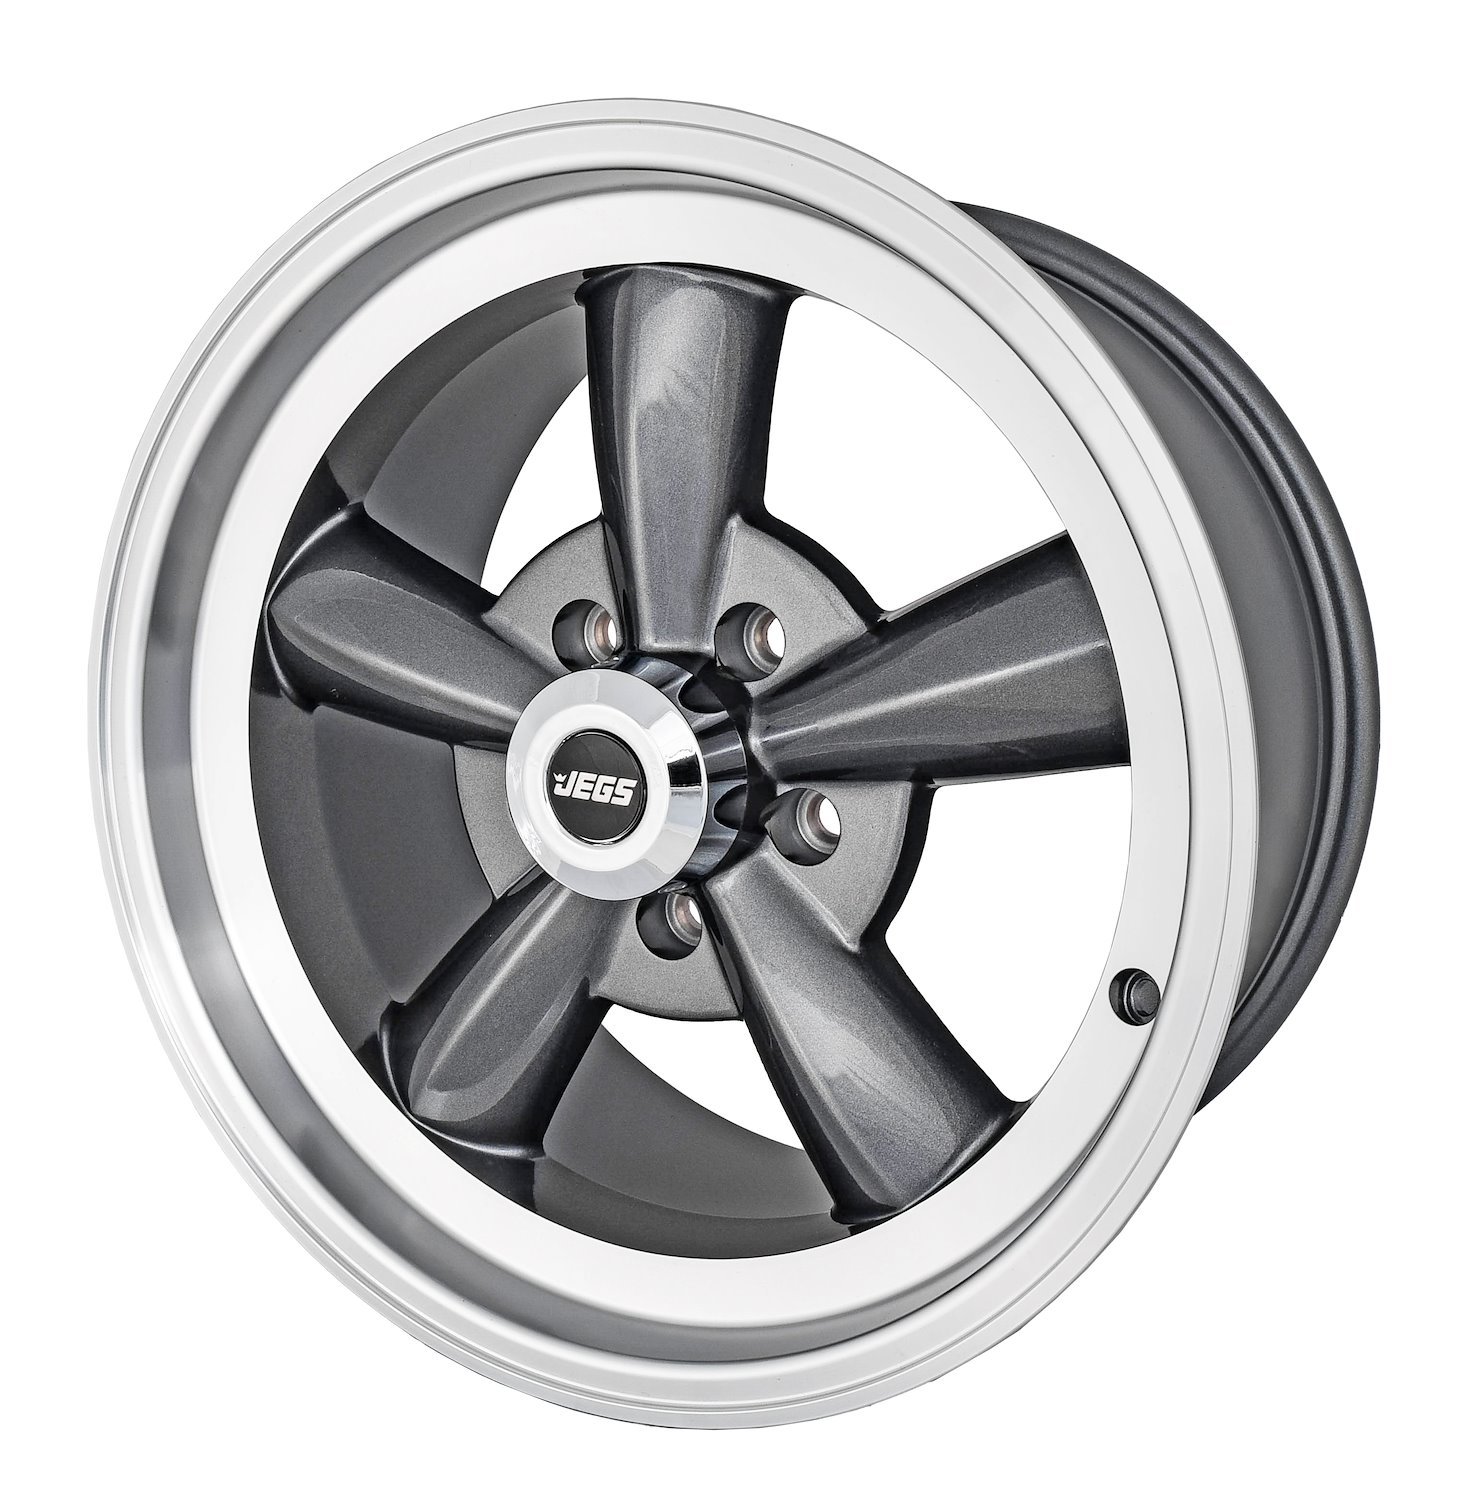 Sport Torque Wheel [Size: 17" x 8"] Polished Lip with Grey Spokes